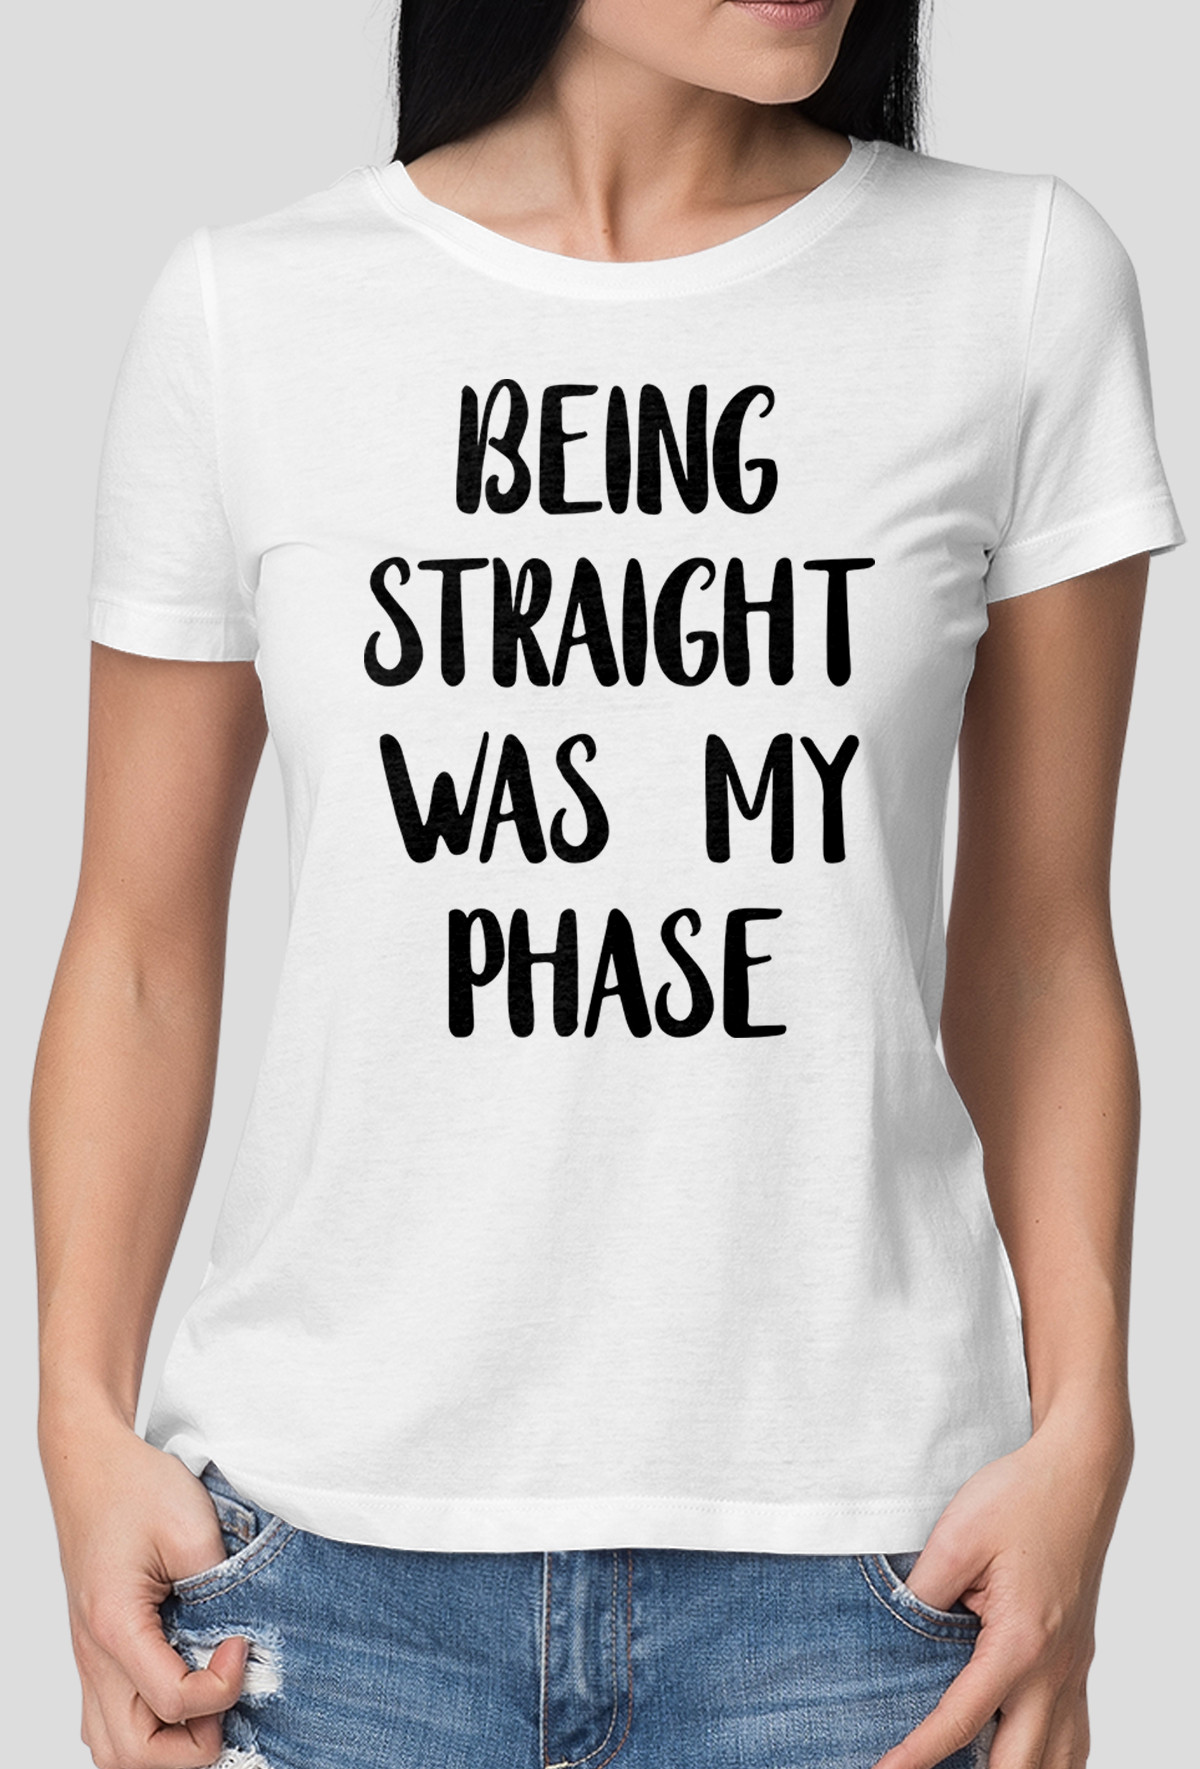 Koszulka - Straight Phase (Pomysł na prezent)